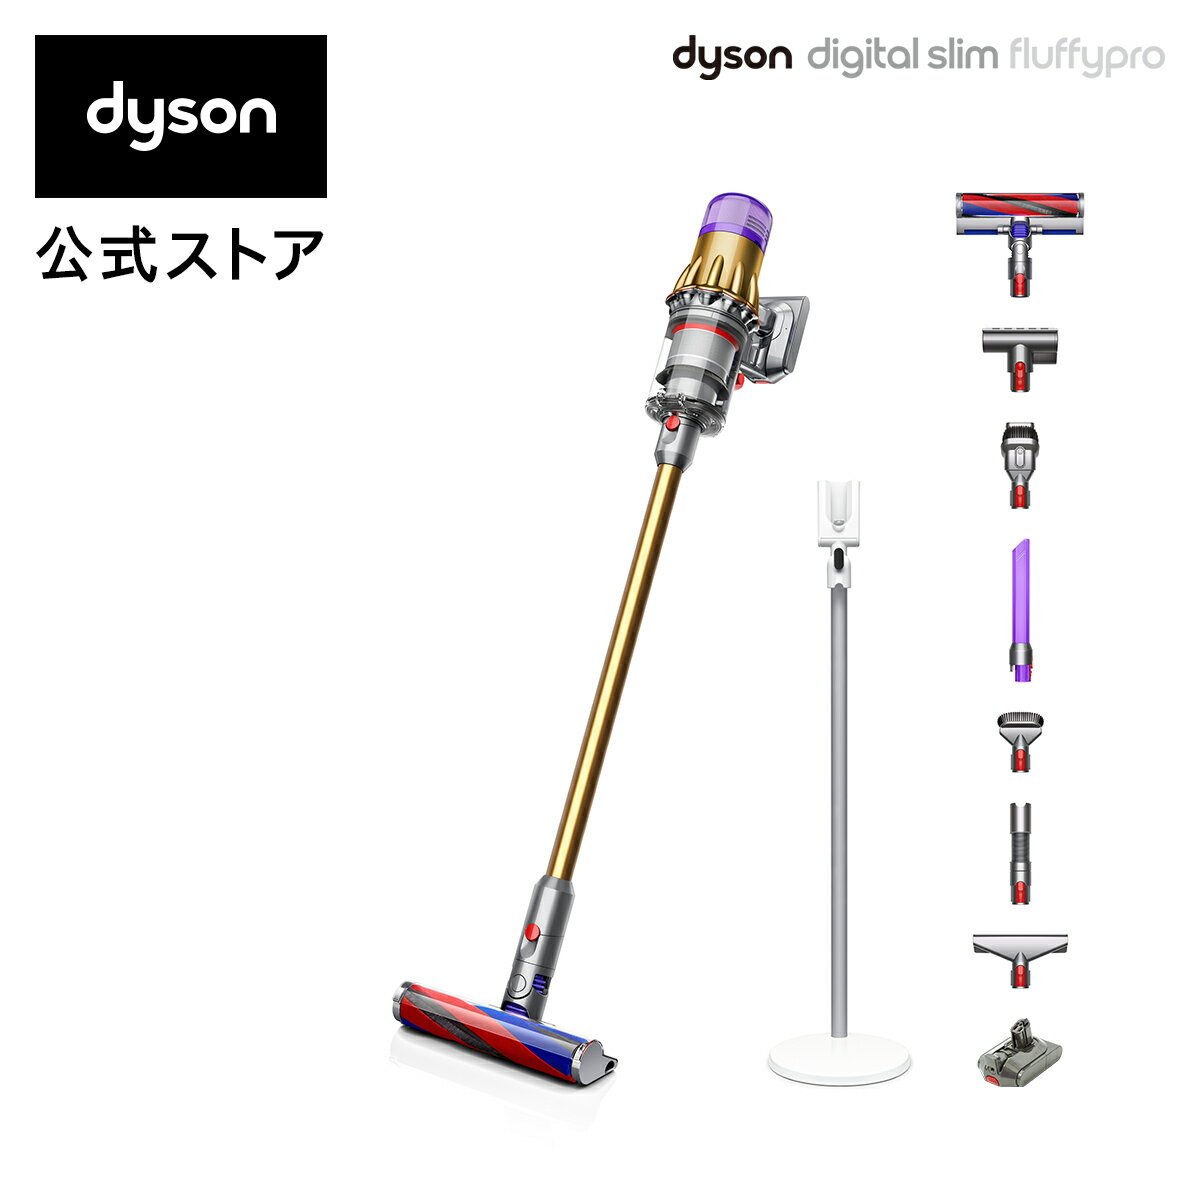 【下取り7千円OFF】【軽量でパワフル】ダイソン Dyson Digital Slim Fluffy Pro サイクロン式 コードレス掃除機 dyson SV18FFPRO 2020年モデル